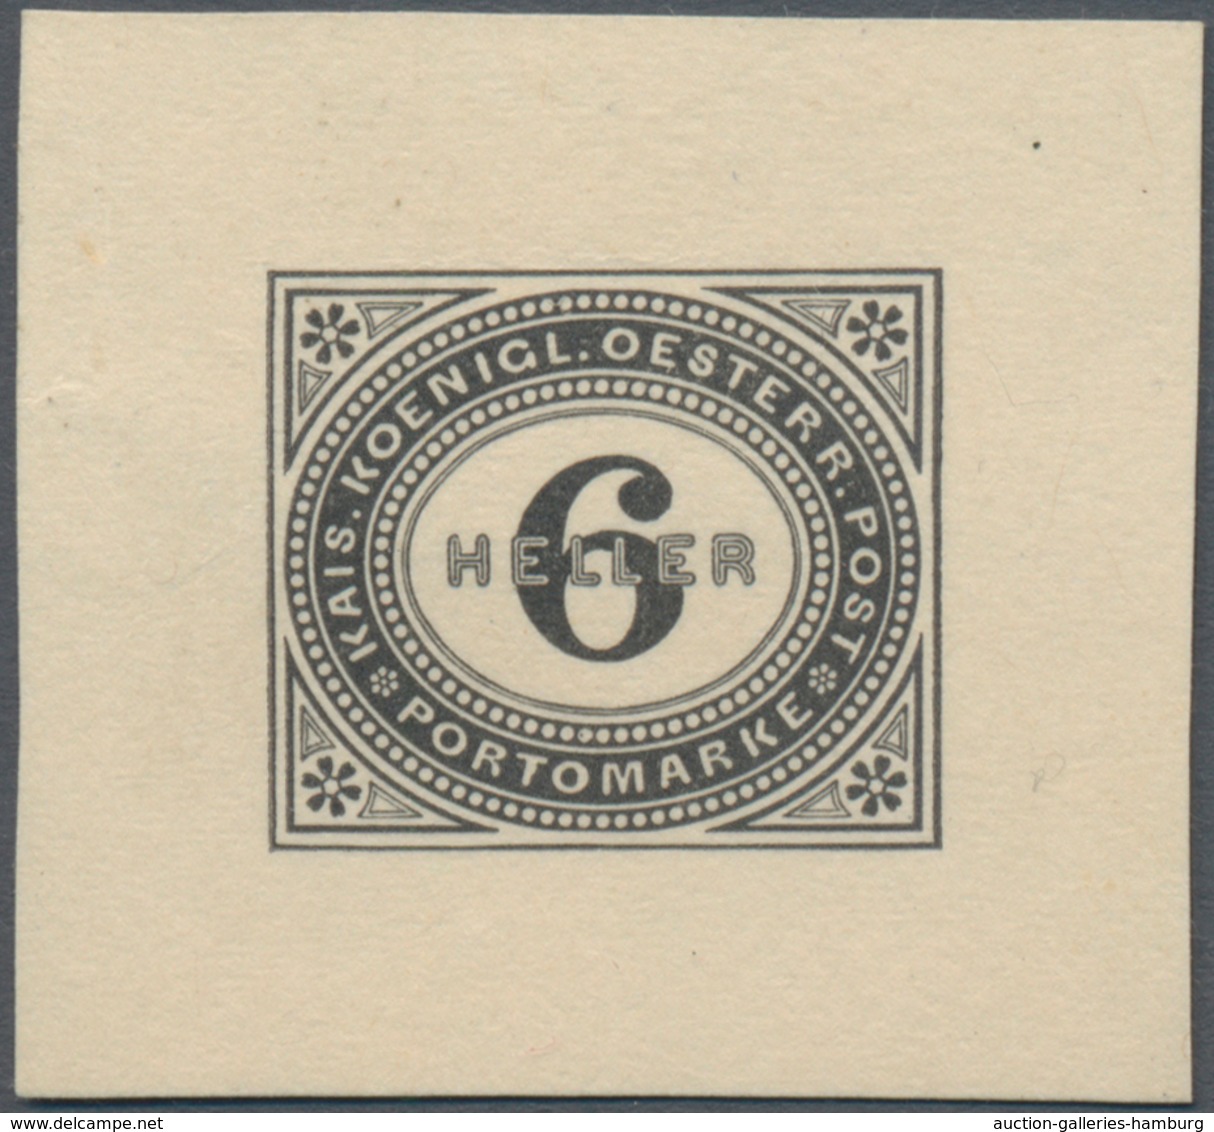 Österreich - Portomarken: 1899/1900, 1 H. bis 100 H., komplette Serie von zwölf Werten je als Einzel